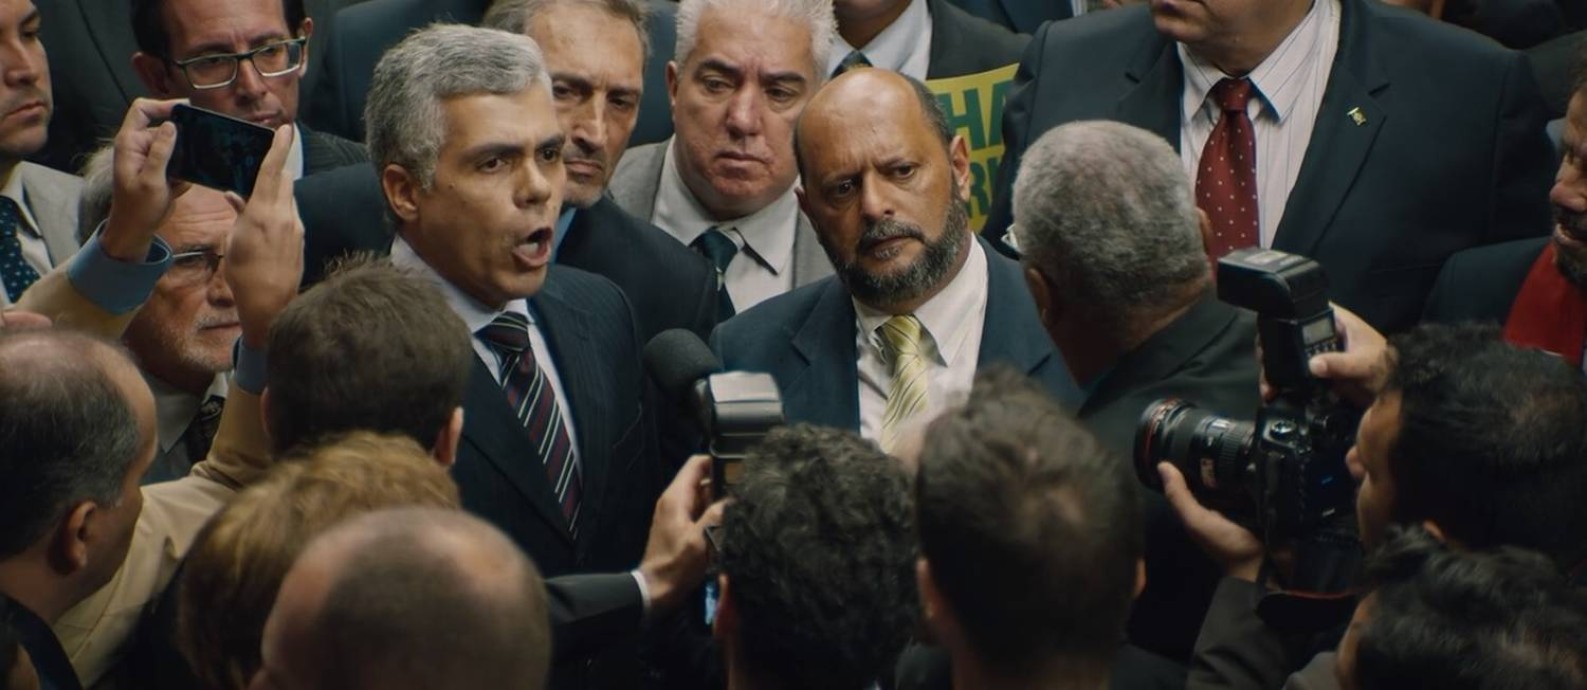 Garcia Júnior em 'O mecanismo': em pequena participação, ator revive discurso de Jair Bolsonaro durante a votação do impeachment de Dilma Rousseff na Câmara dos Deputados Foto: Reprodução